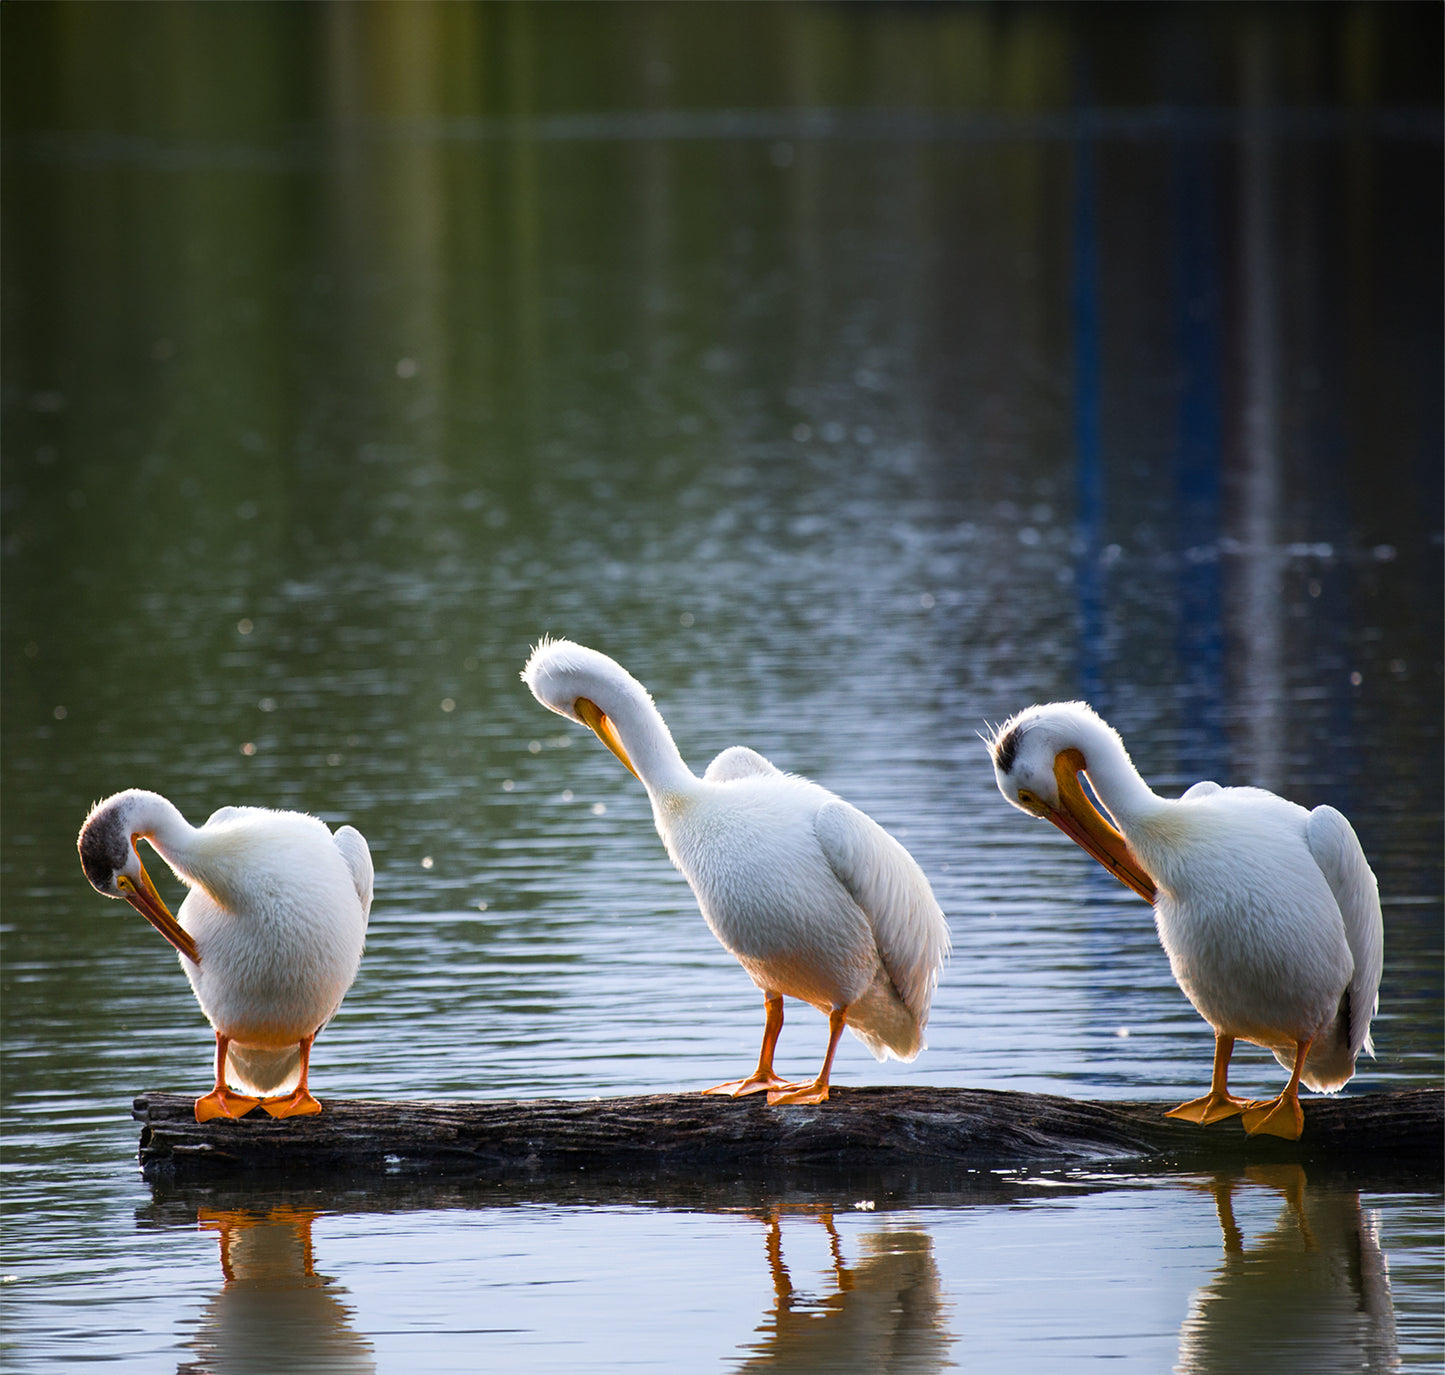 
                  
                    The Preening Pelicans
                  
                